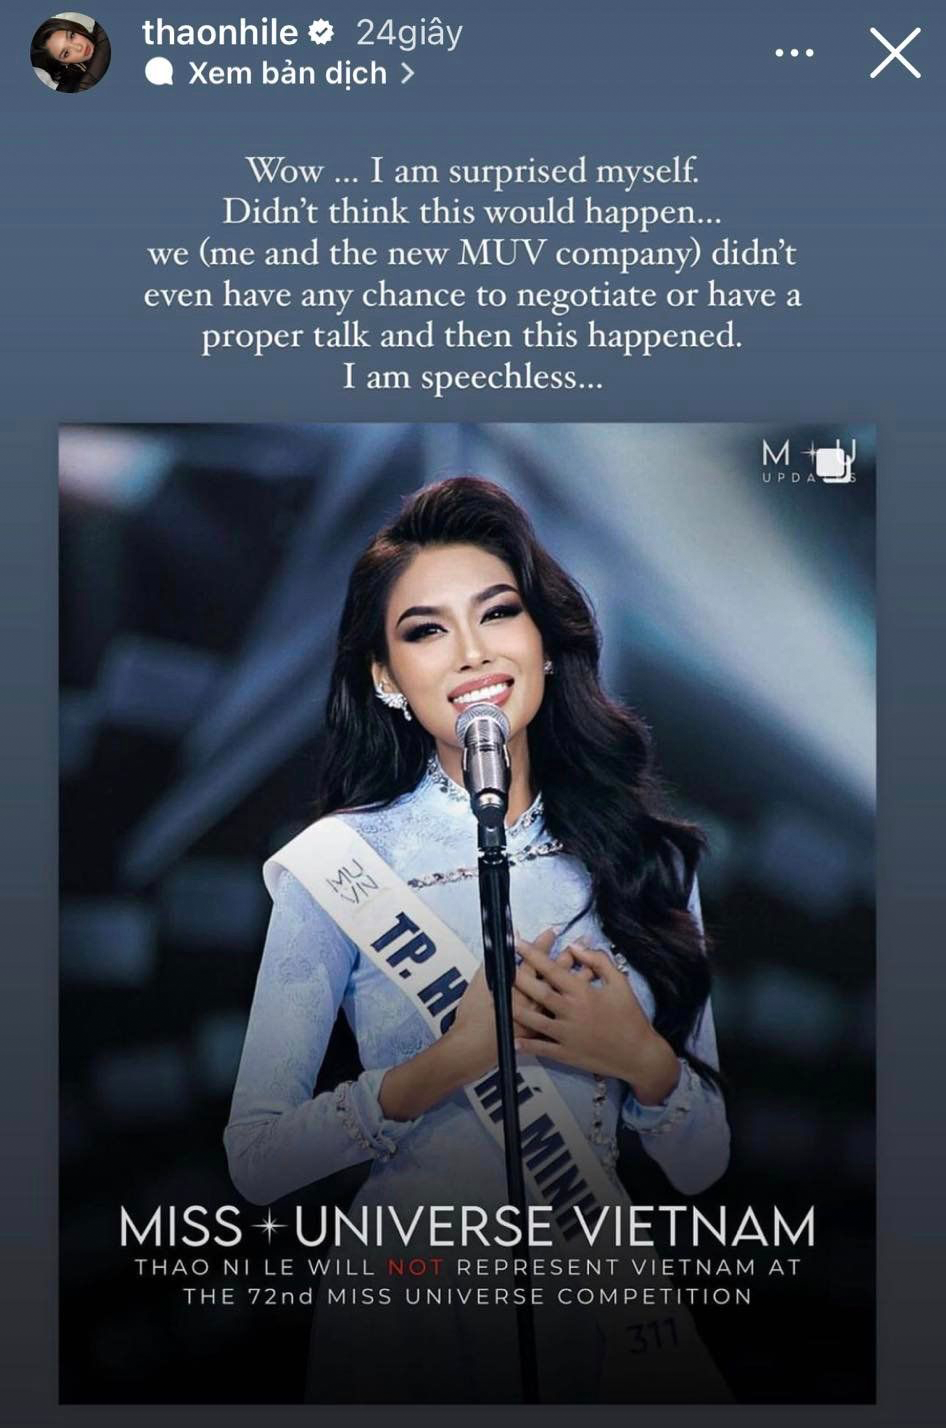 Bị 'tước quyền' tham dự Miss Universe 2023, Á hậu Thảo Nhi Lê phản pháo bất ngờ: 'Tự biên tự diễn'? - Ảnh 2